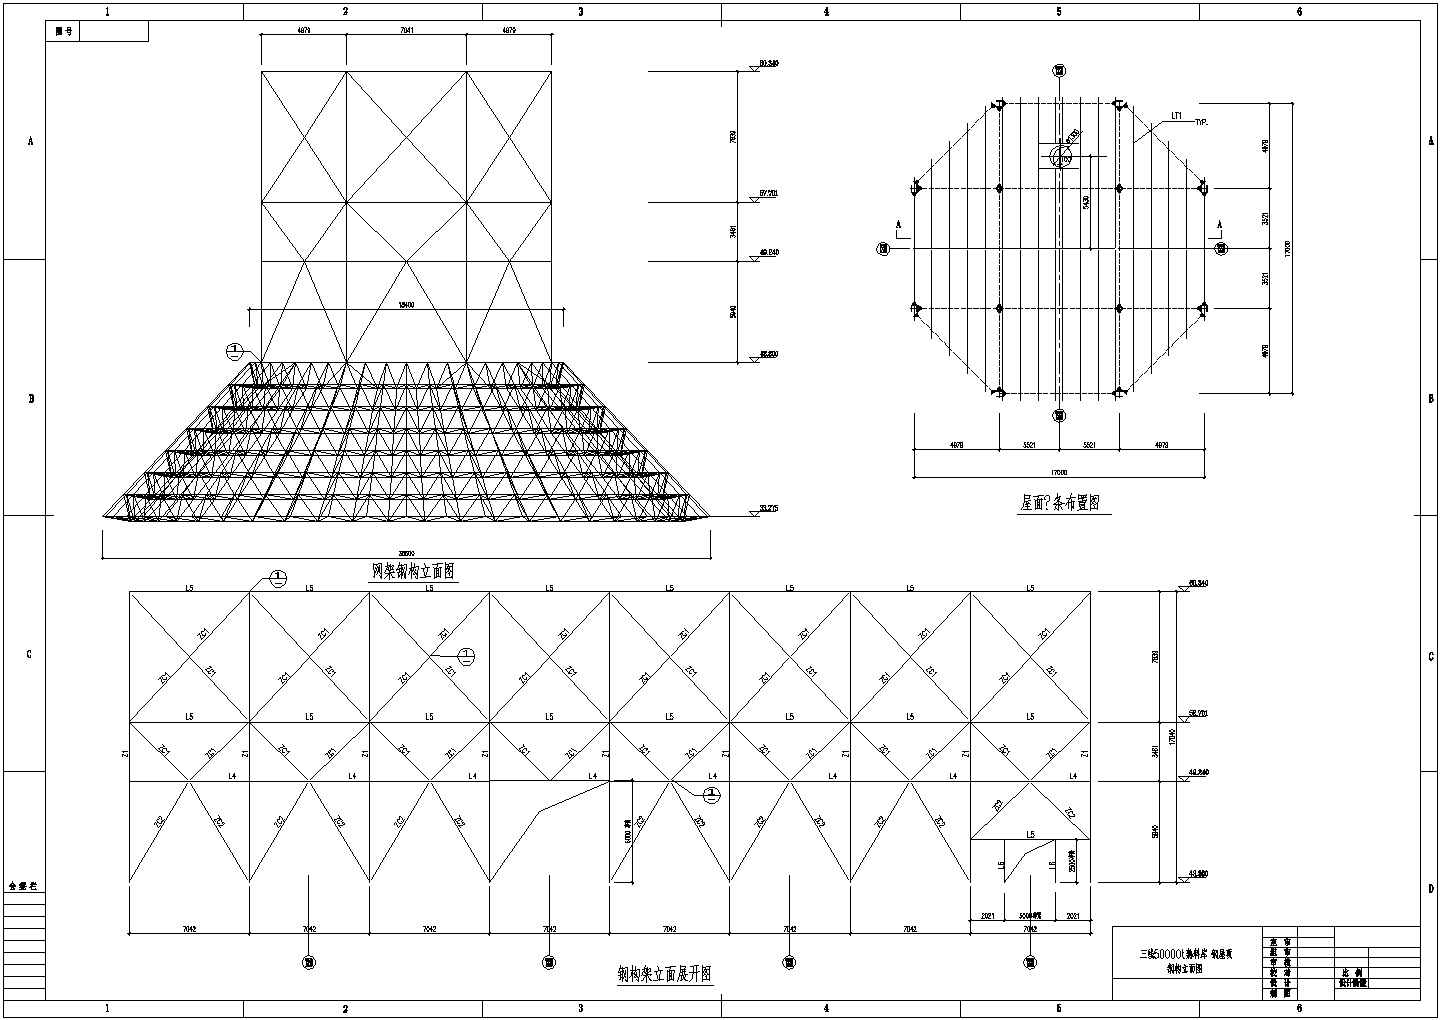 5万T水泥熟料库钢屋顶（圆形网架）结构图